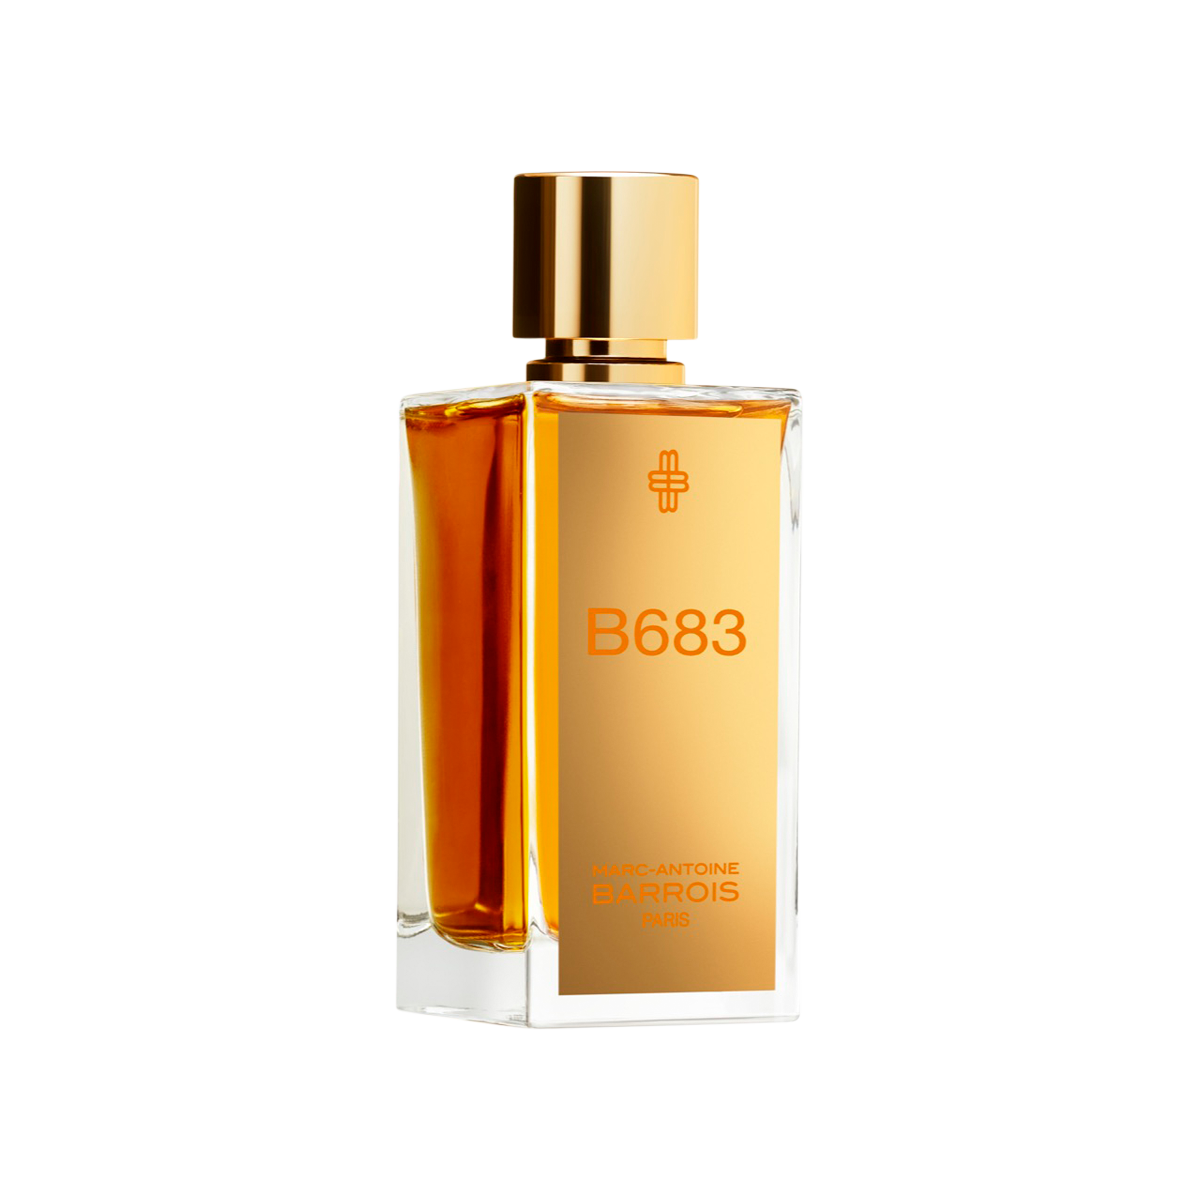 Marc-Antoine Barrois - B683 Eau de Parfum